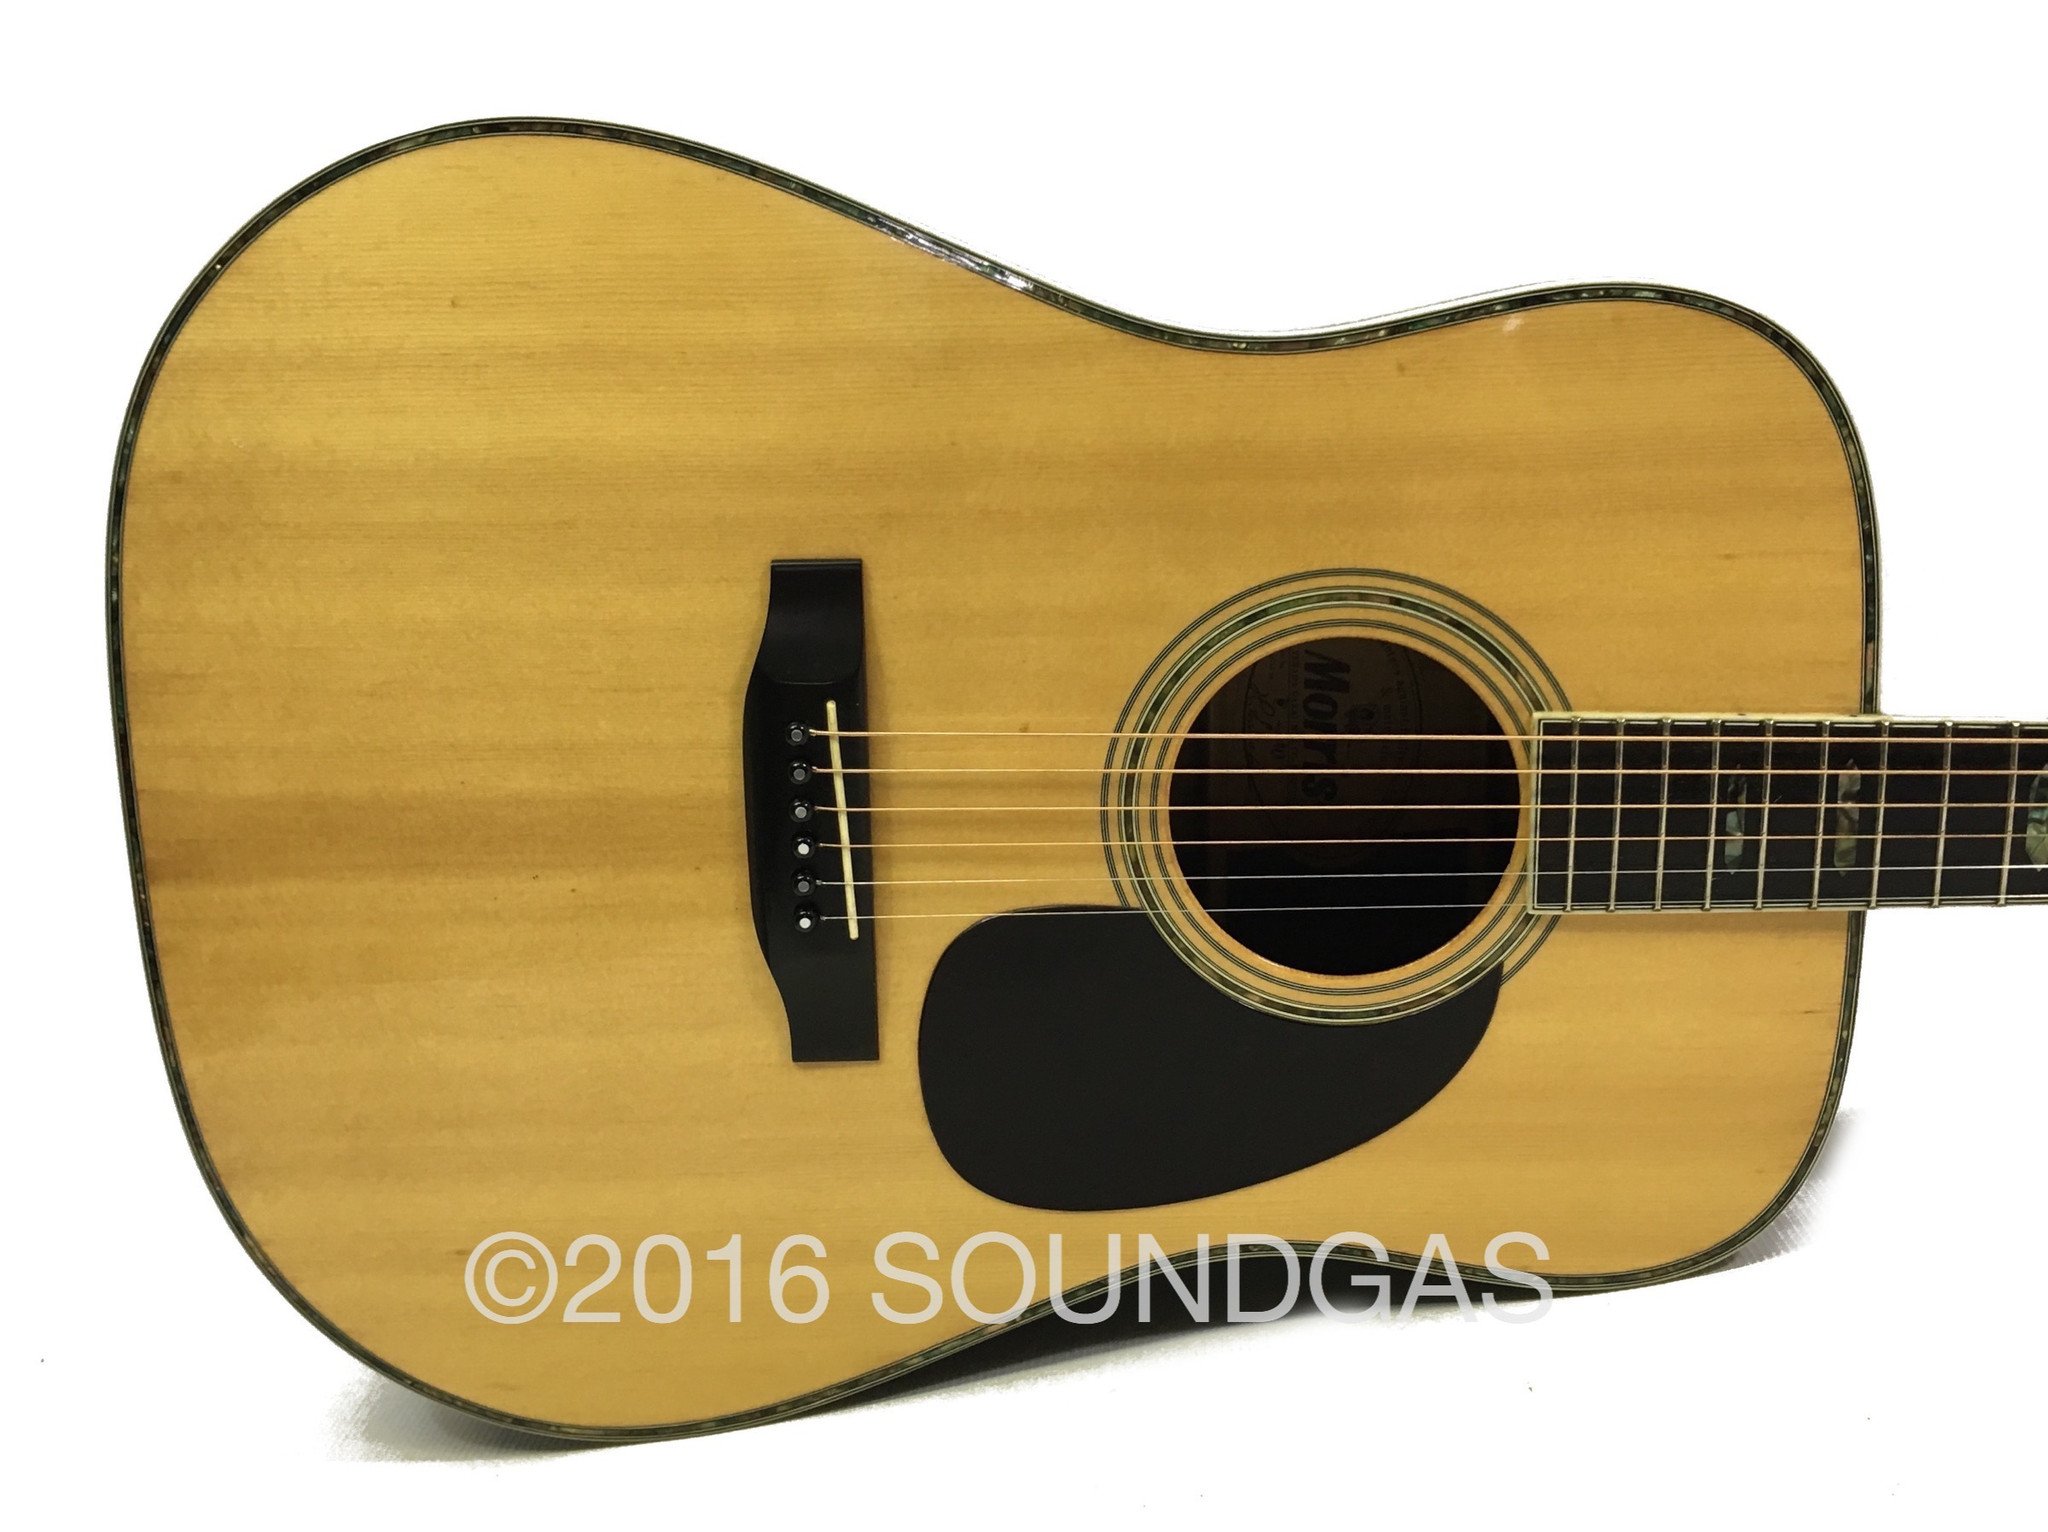 Morris W-40 - Vintage Martin Copy - 70s Japanese Acoustic Guitar